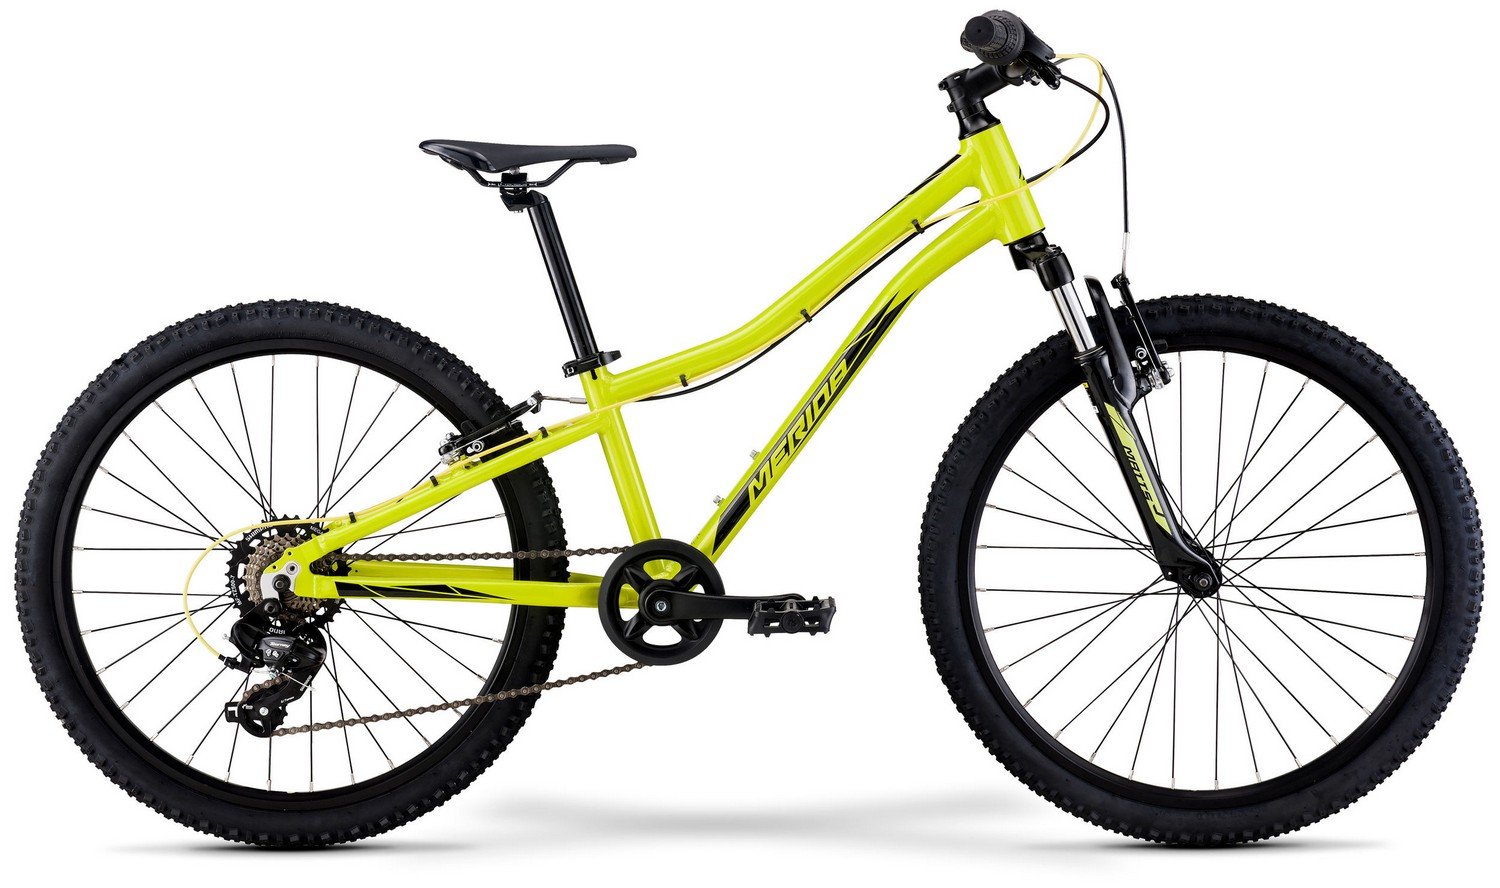 Подростковый велосипед Merida Matts J.24 Eco, год 2023, цвет Желтый-Черный